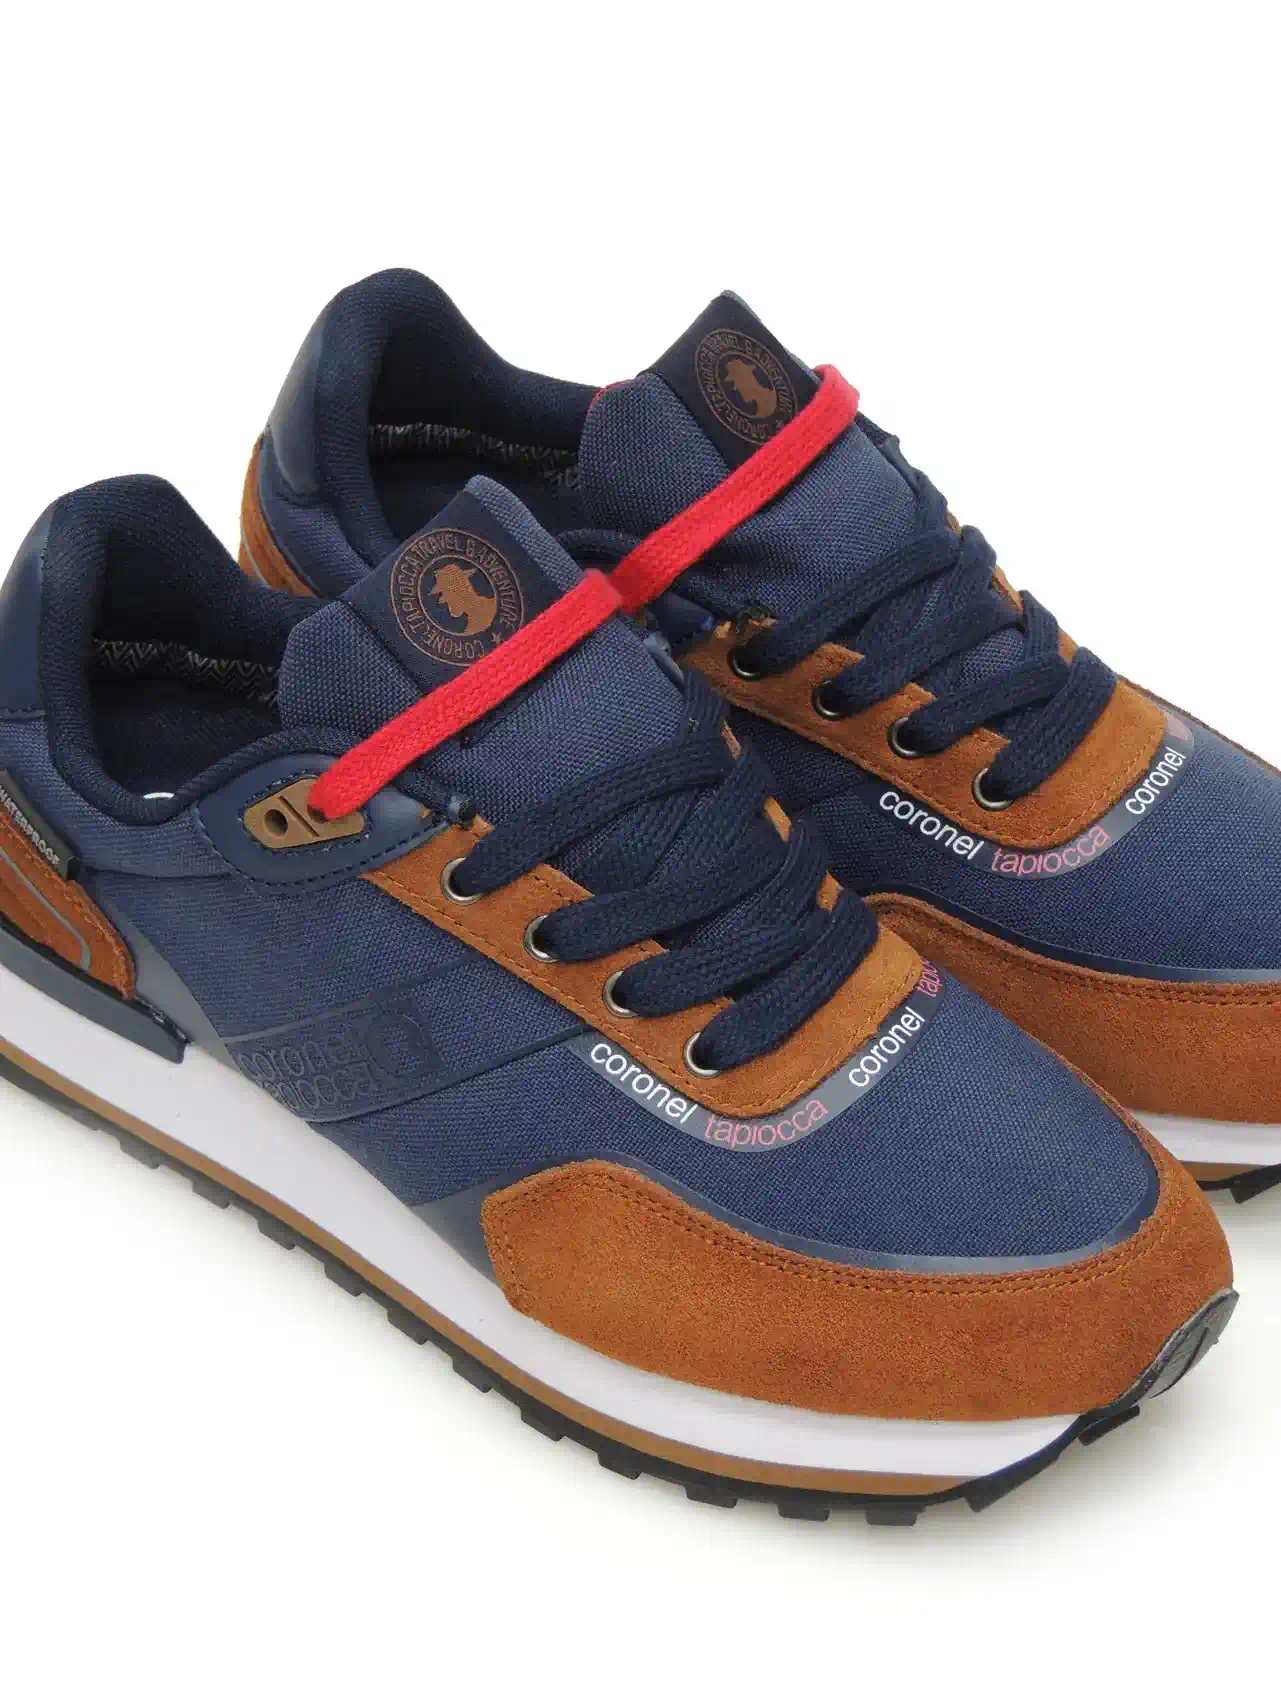 sneakers--coronel tapiocca-t500-8-piel-marino